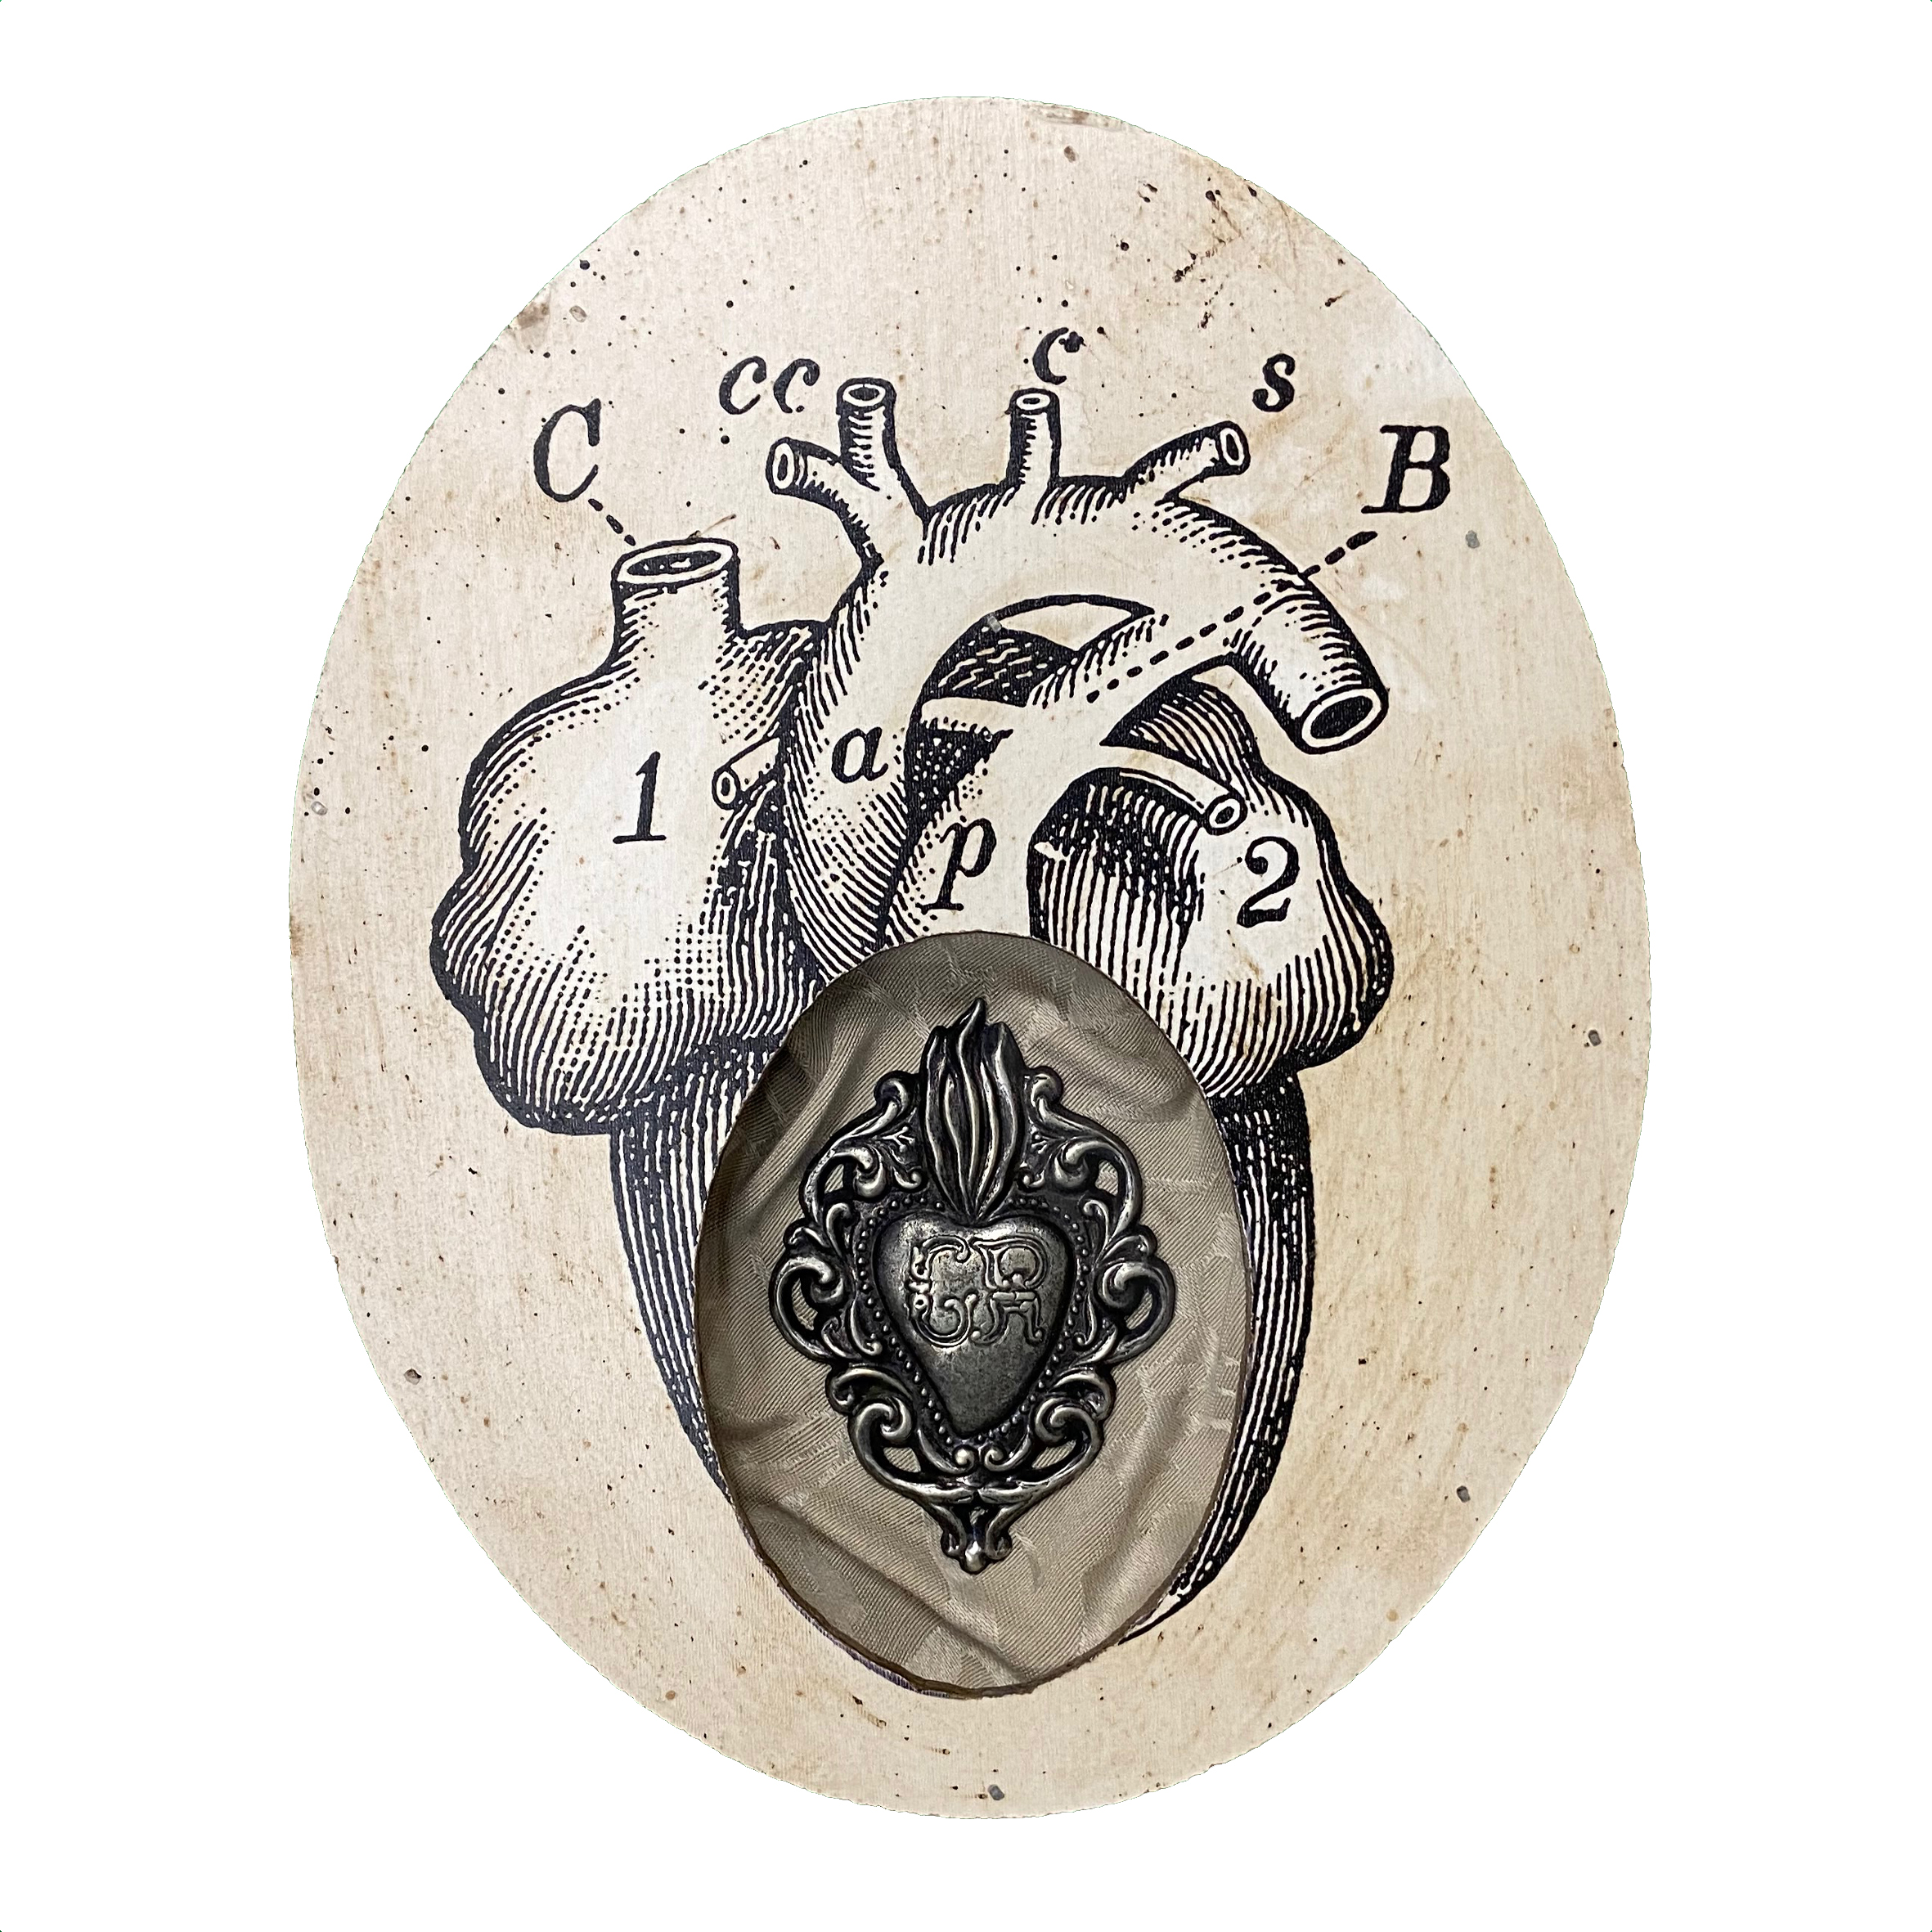 Formella cuore anatomico e cuore sacro con lettere e numeri - El Rana